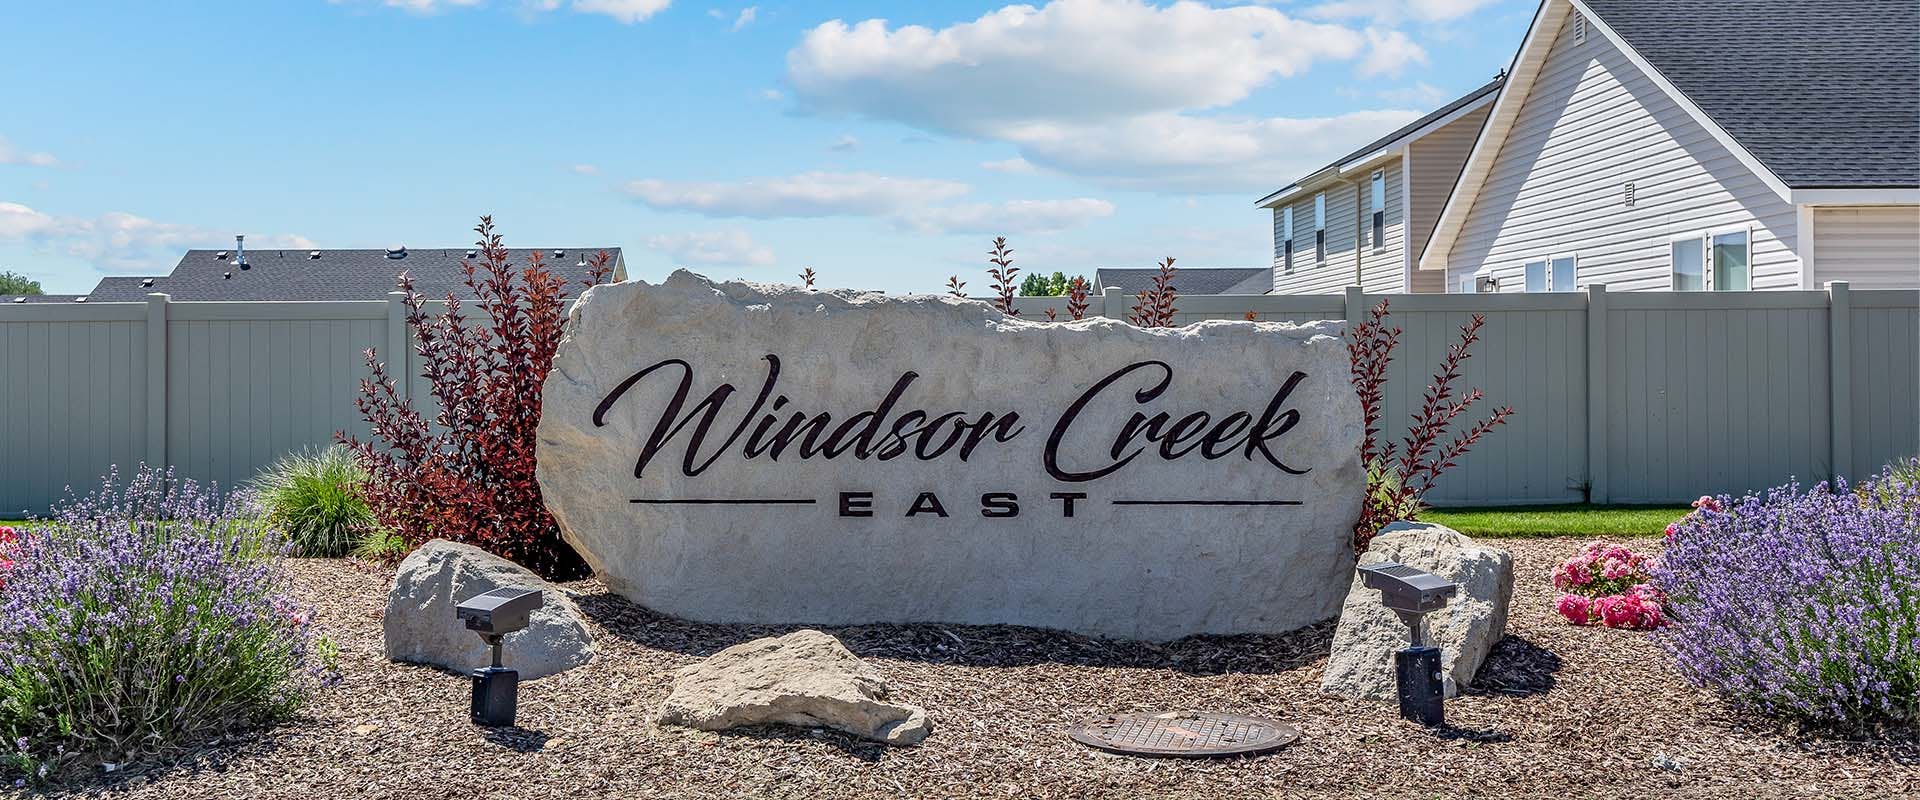 Windsor-Creek-East-New-Homes-Caldwell-Idaho Sign.jpg